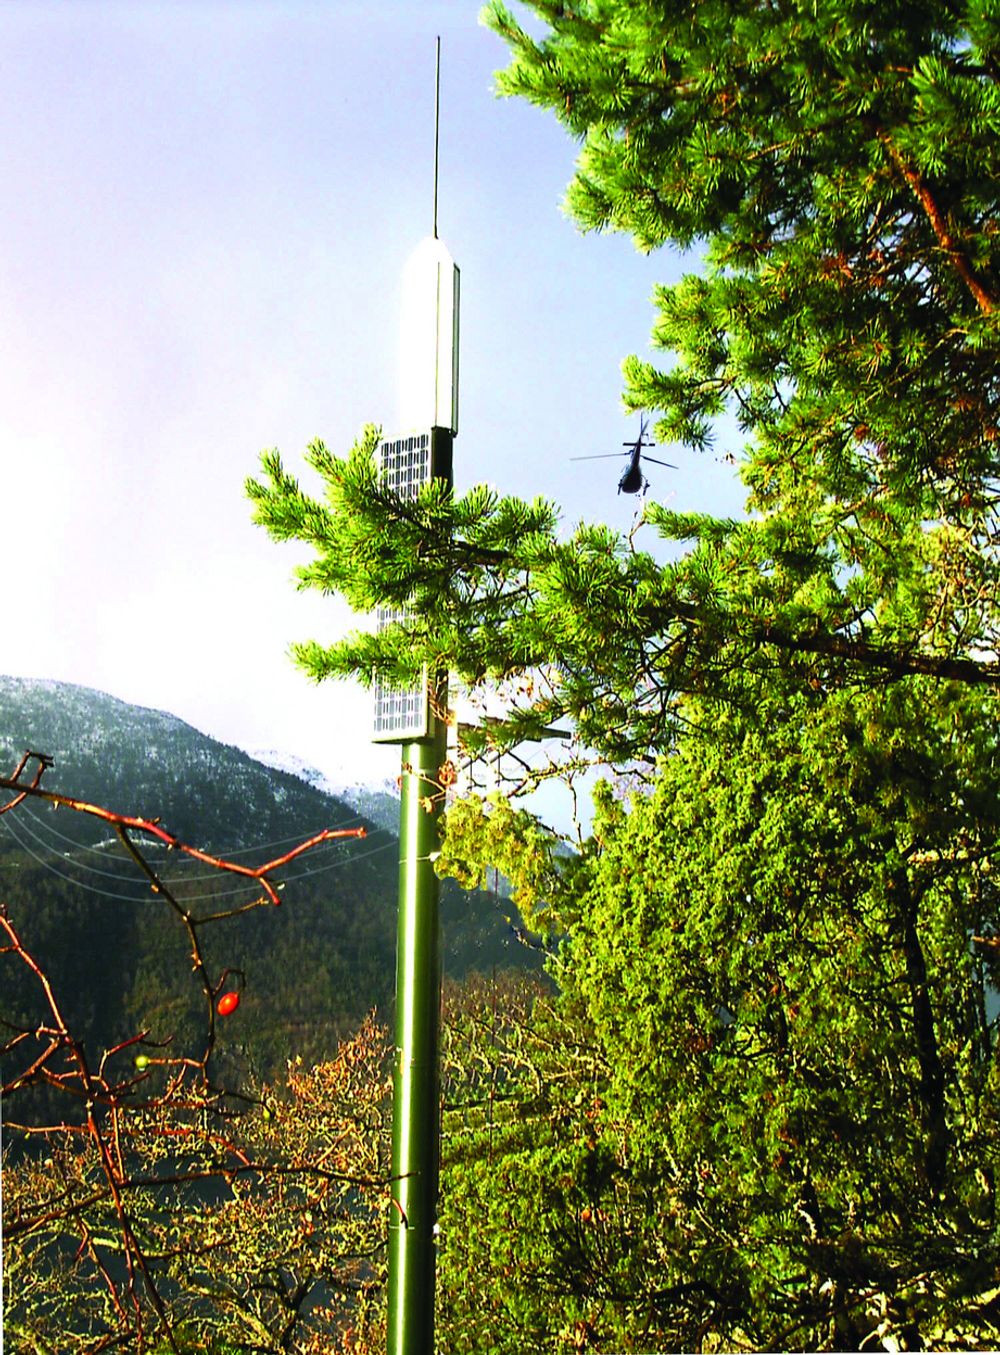 PLASSERING: Radarvarsleren plasseres på et strategisk sted i nærheten av lufthinderet. Øverst VHF-antenne, under radarpaneler med antenner som dekker 360 grader, og nederst solcellepanelene.